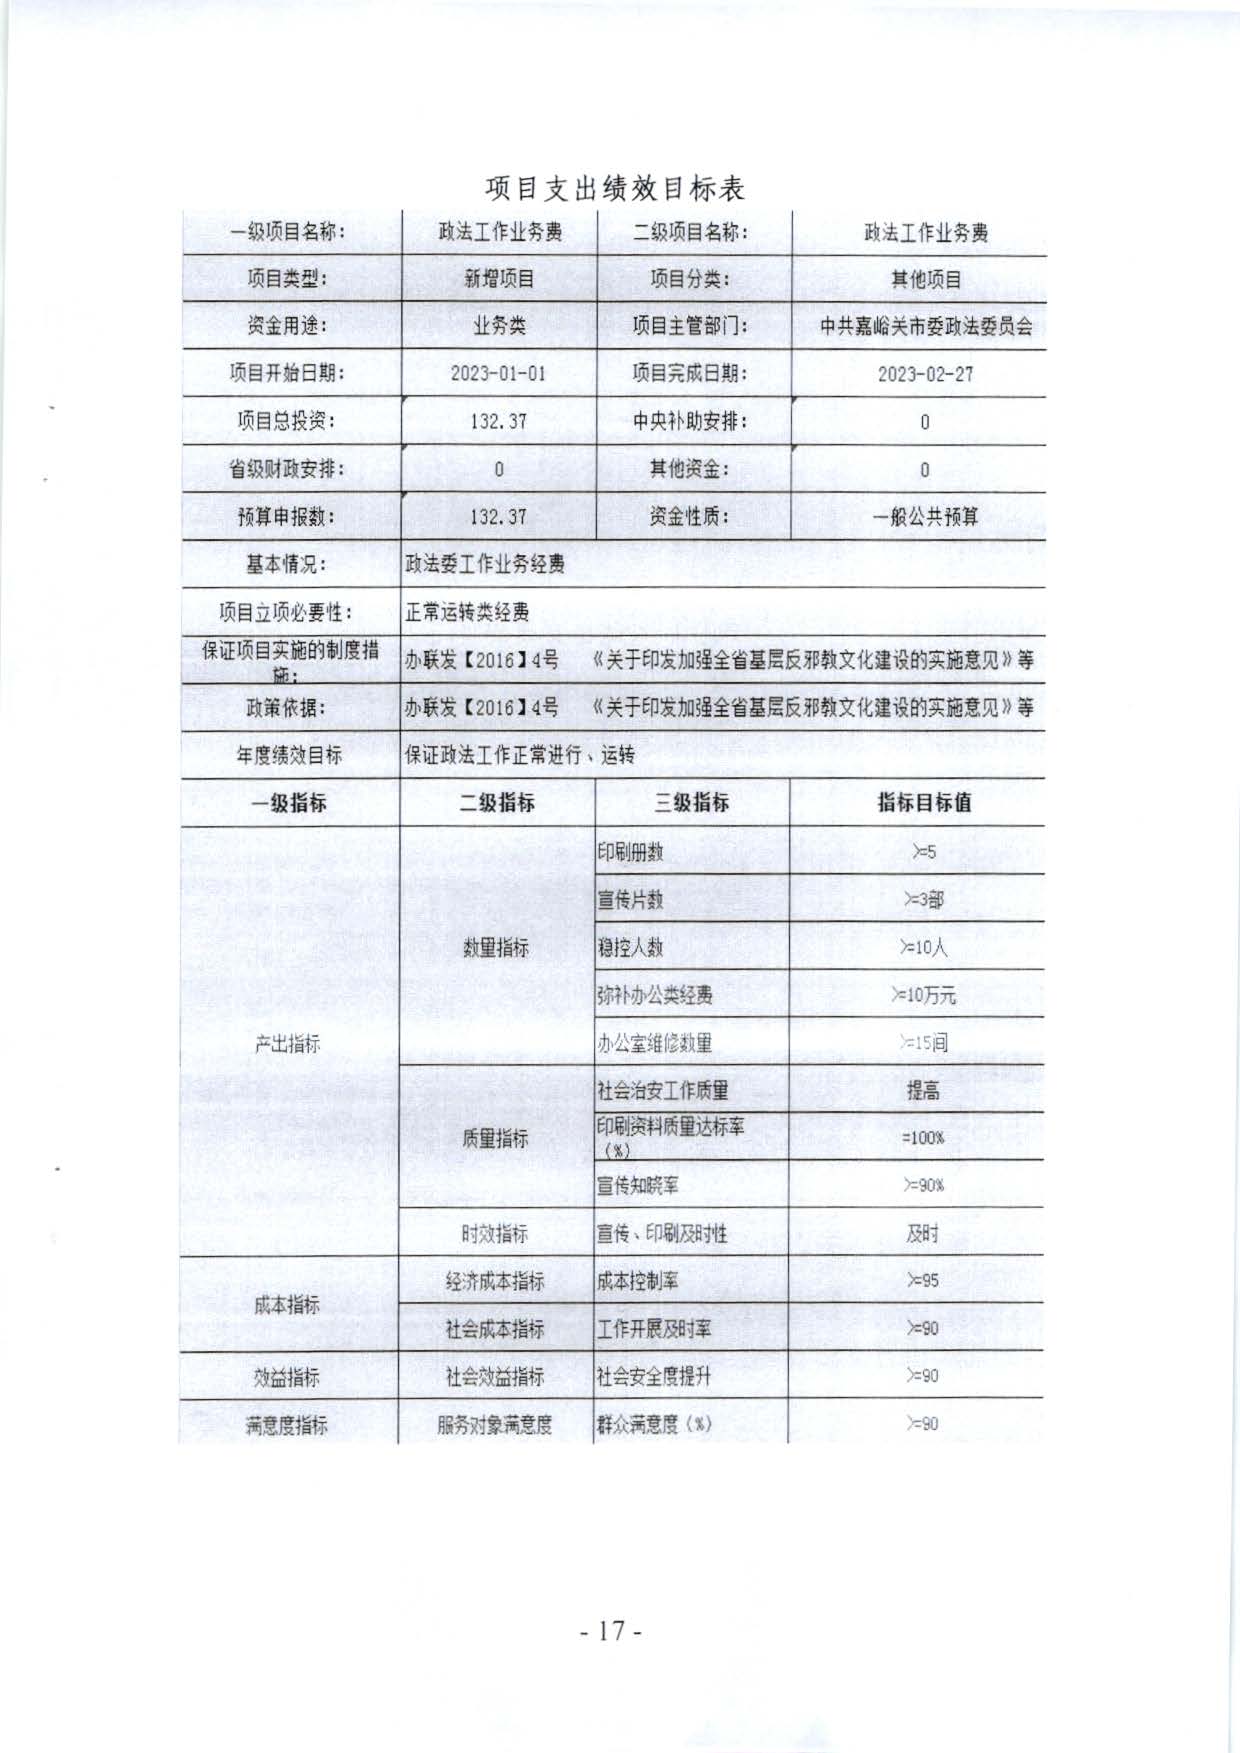 嘉峪关市委政法委2023年预算公开情况说明(1)_页面_17